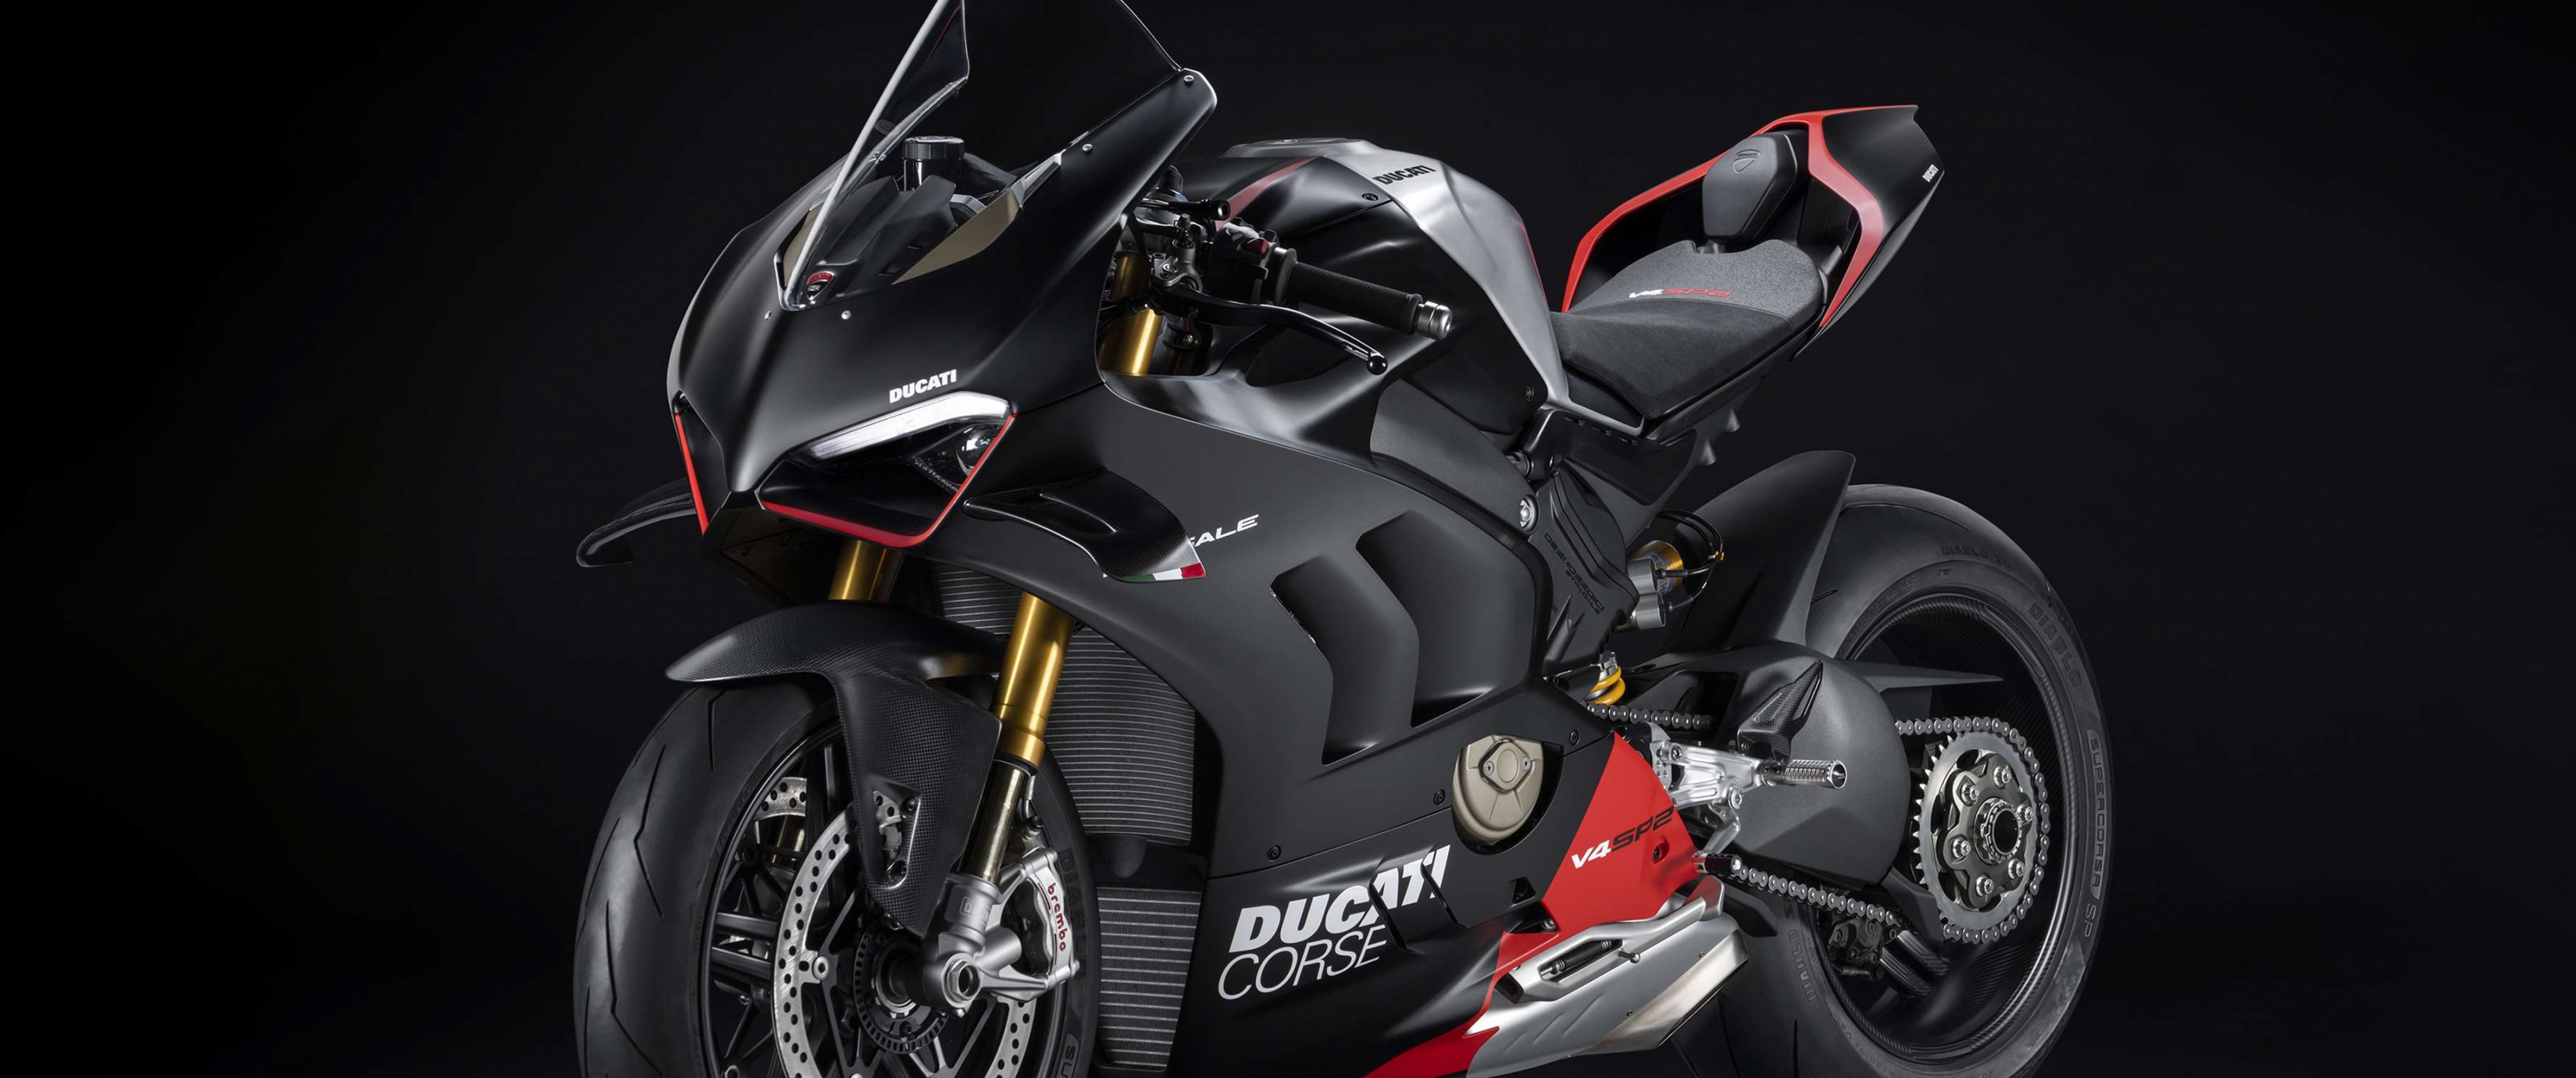 Ducati Panigale V4 SP2 / Hình nền đen / 2024: Hãy khám phá chiếc Ducati Panigale V4 SP2 với màu đen sắc sảo và khí động học tuyệt vời, cùng với những hình nền đen tối lạ mắt và đẳng cấp. Đón chào năm mới 2024 với chiếc xe đua huyền thoại này trên màn hình của bạn.